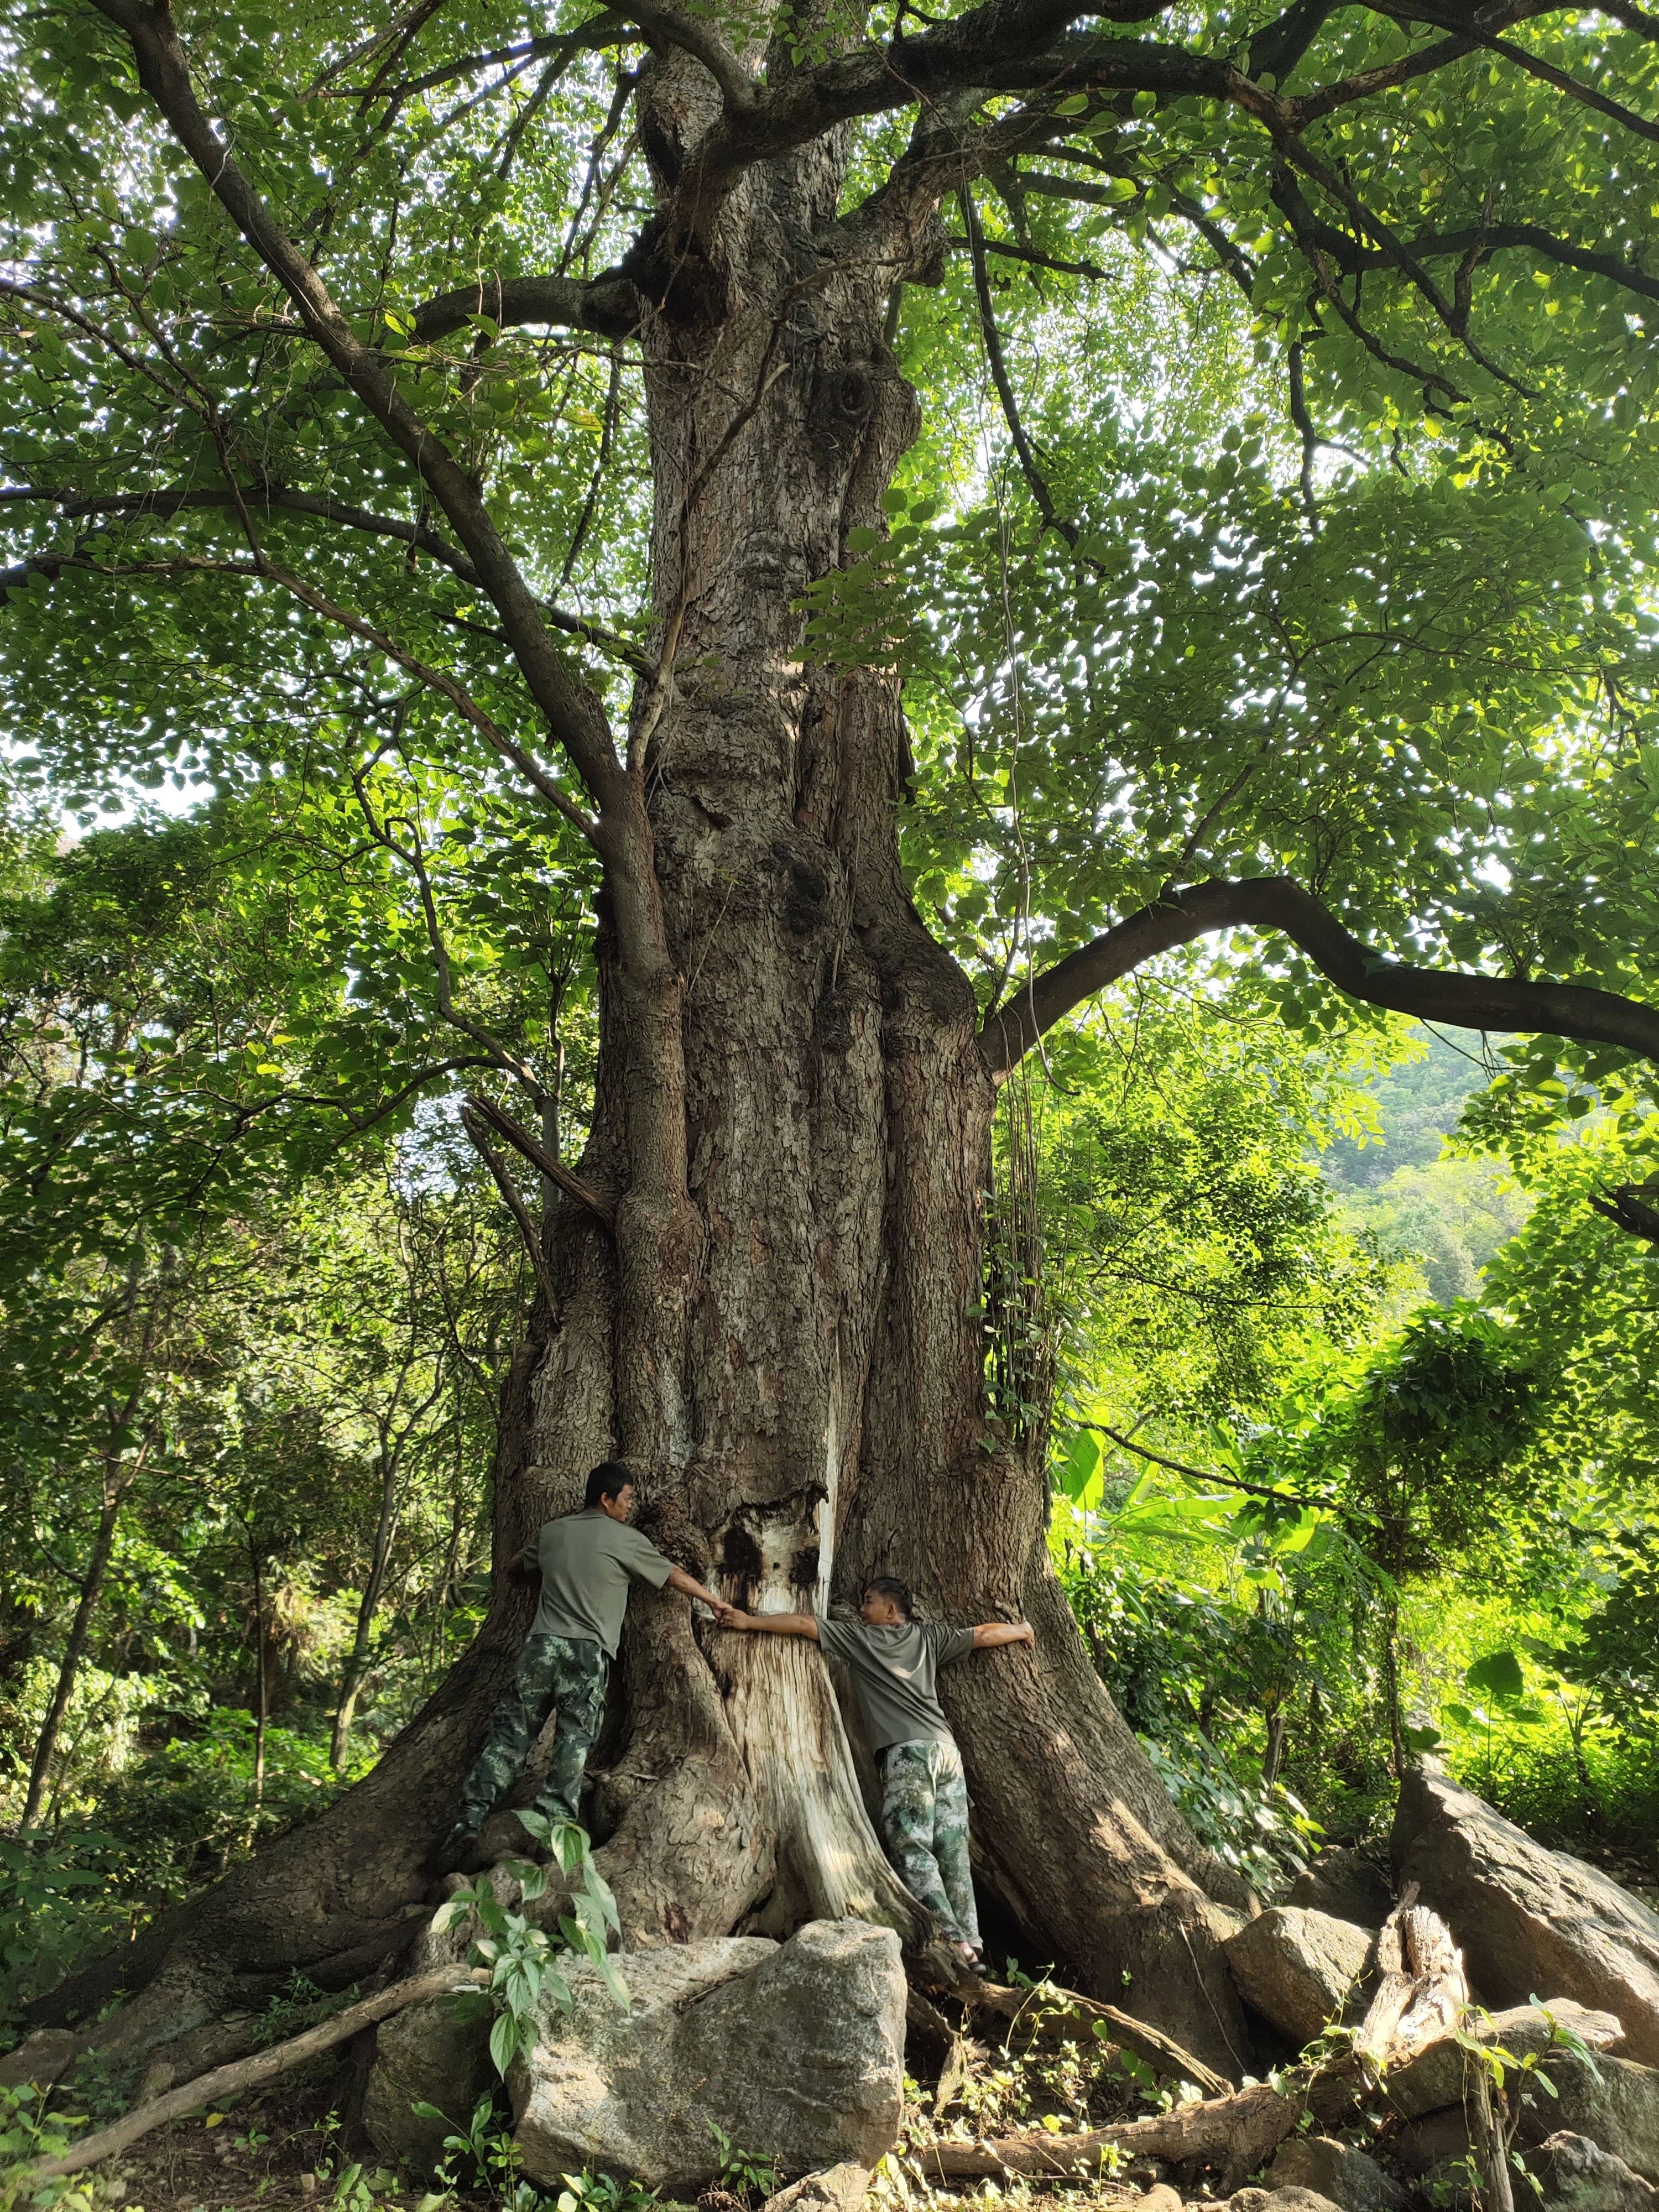 云南保山这棵千年野生桑树被专家评为"世界桑树王"树高49.